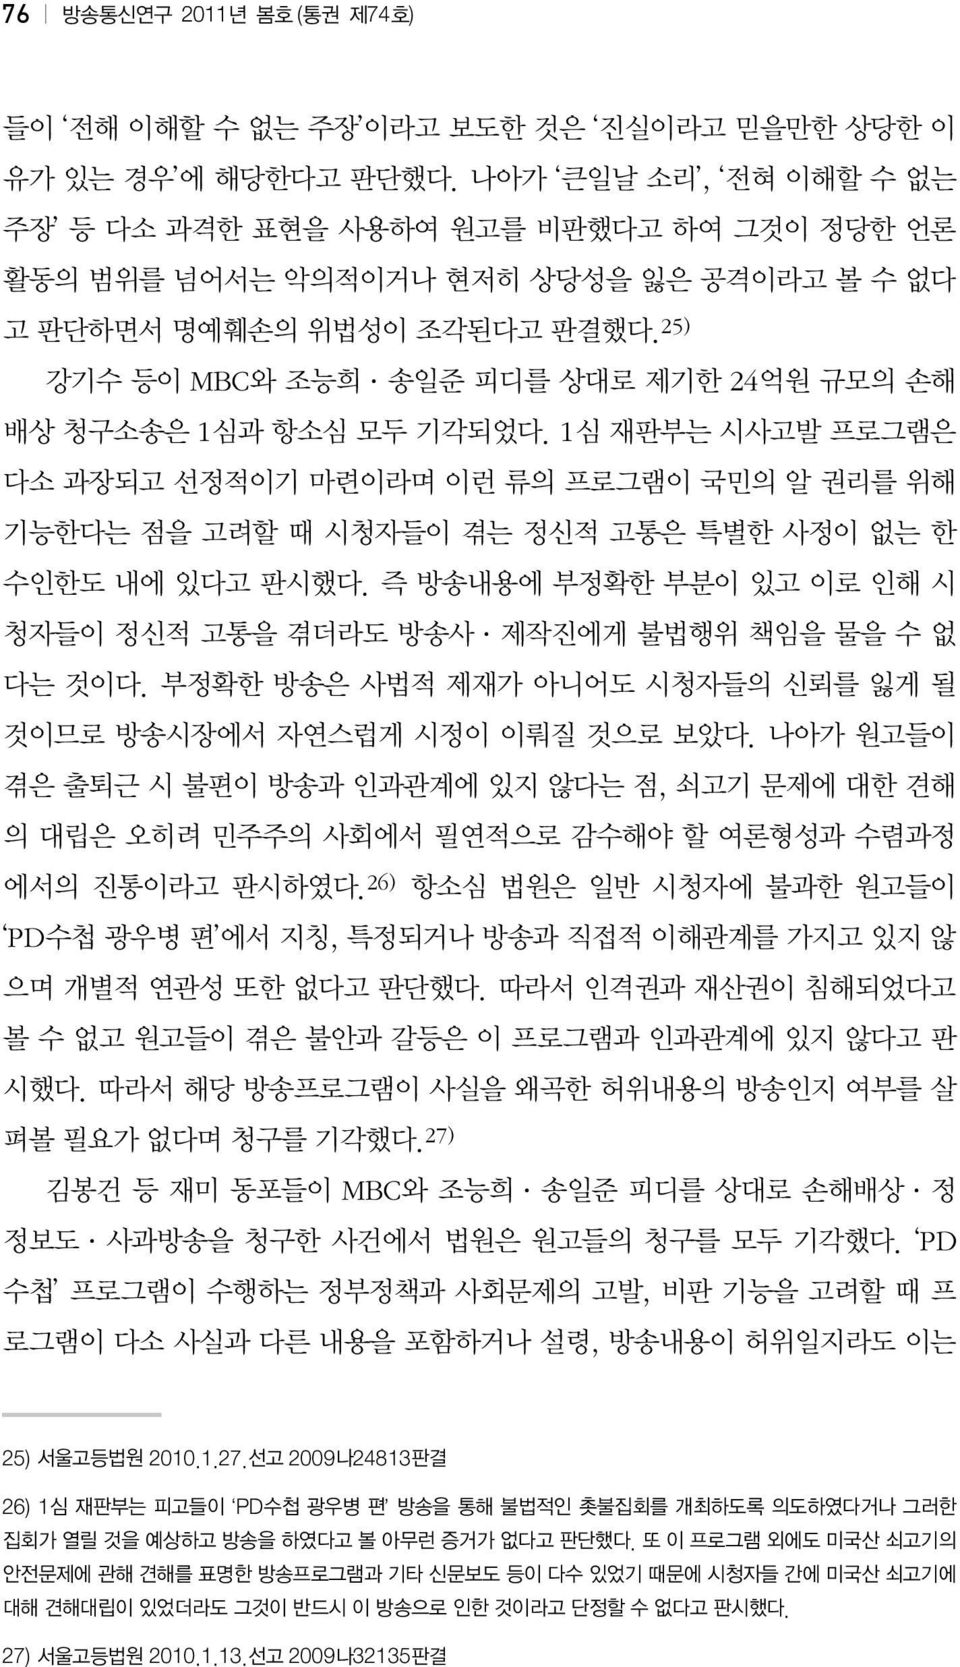 25) 강기수 등이 MBC와 조능희 송일준 피디를 상대로 제기한 24억원 규모의 손해 배상 청구소송은 1심과 항소심 모두 기각되었다.